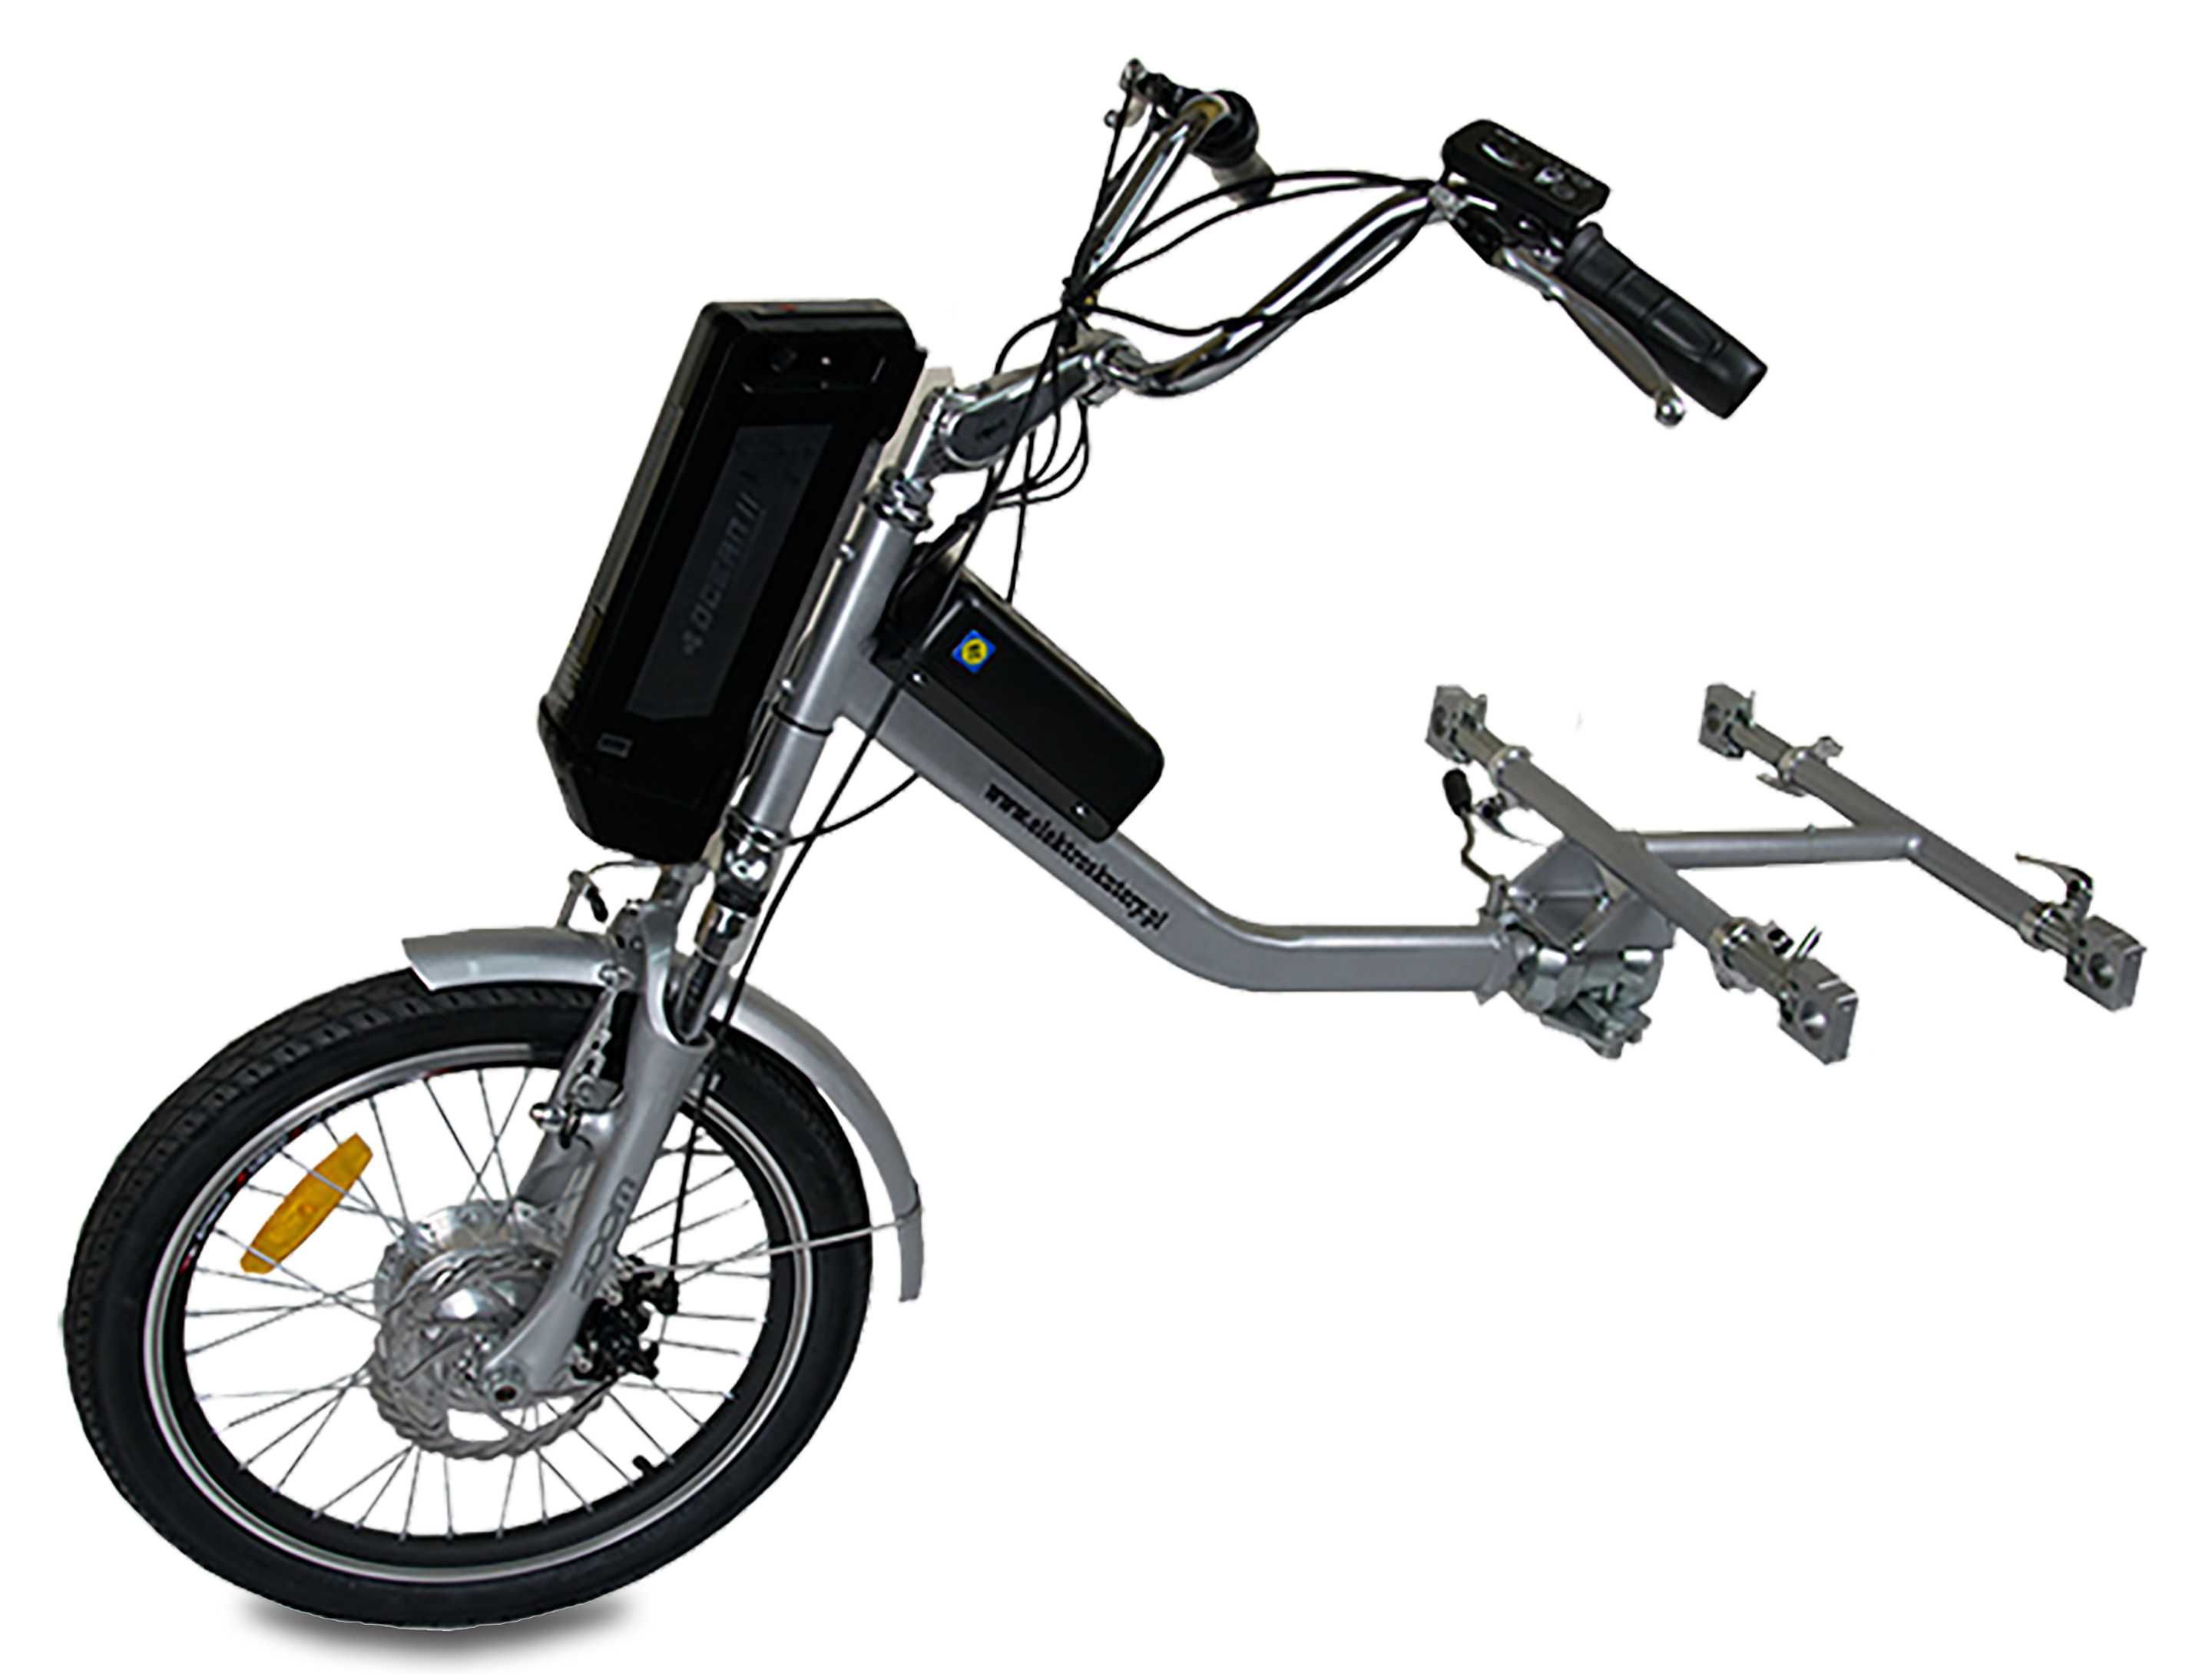 Wózek inwalidzki specjalny o napędzie elektrycznym Transformer+gratisy